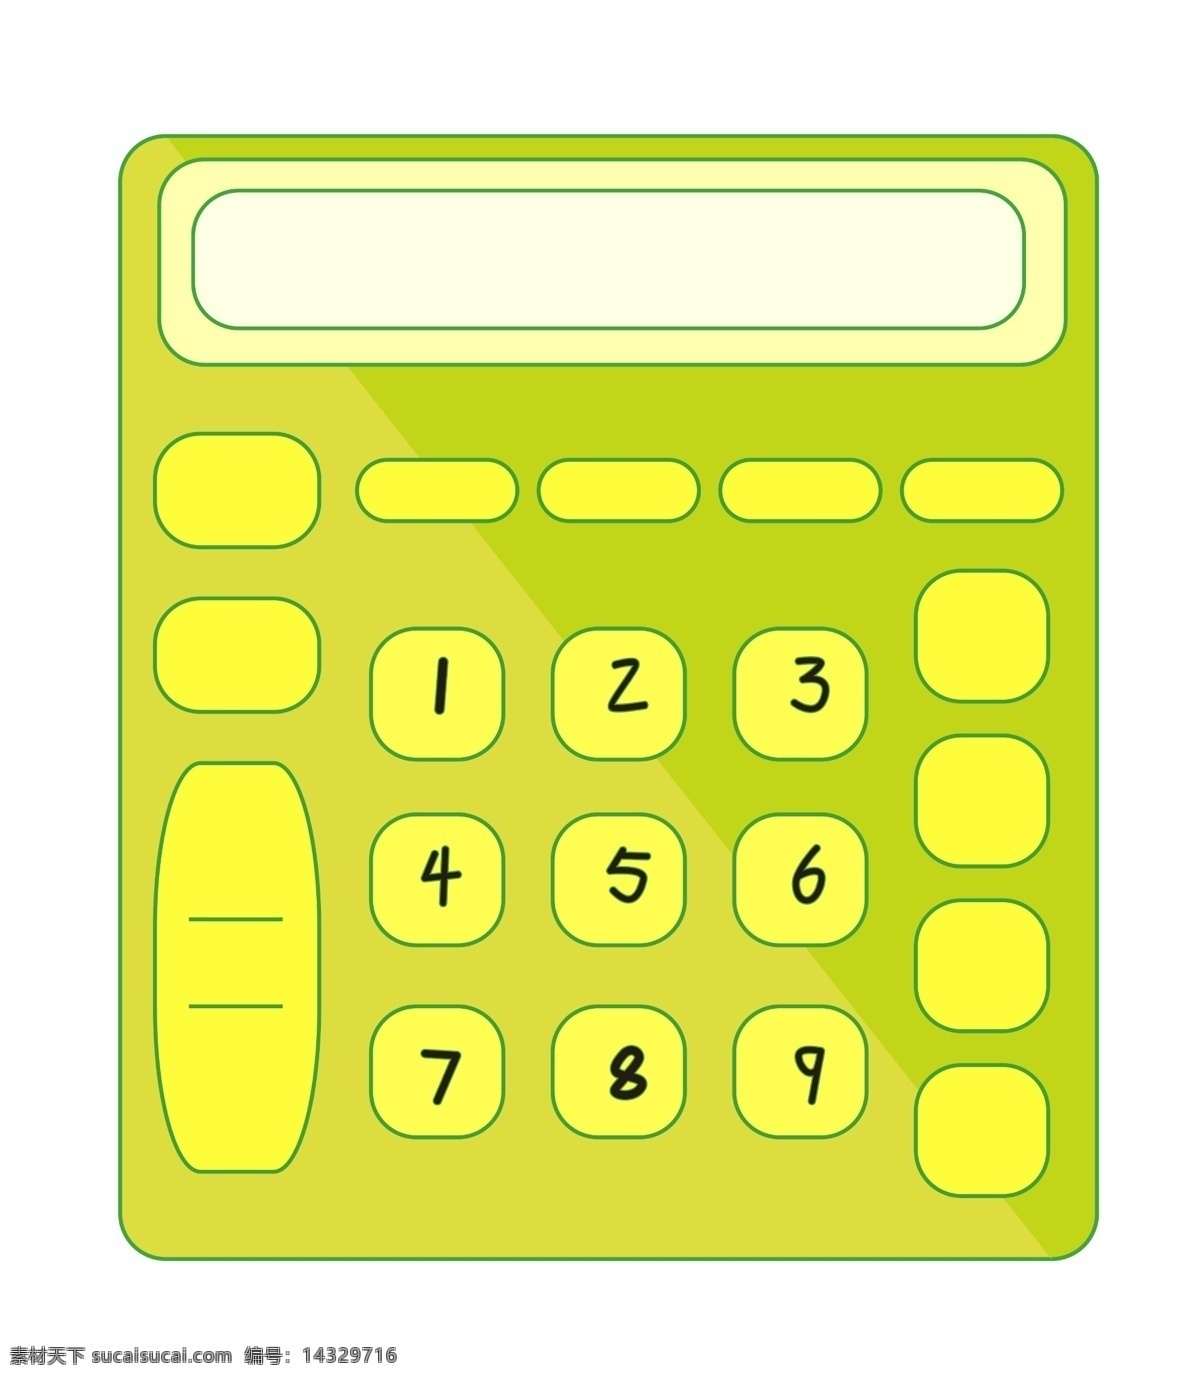 果绿色 计算器 插画 果绿色计算器 数字按键 算数 计算 会计 电子产品 电子设备 办公用品插画